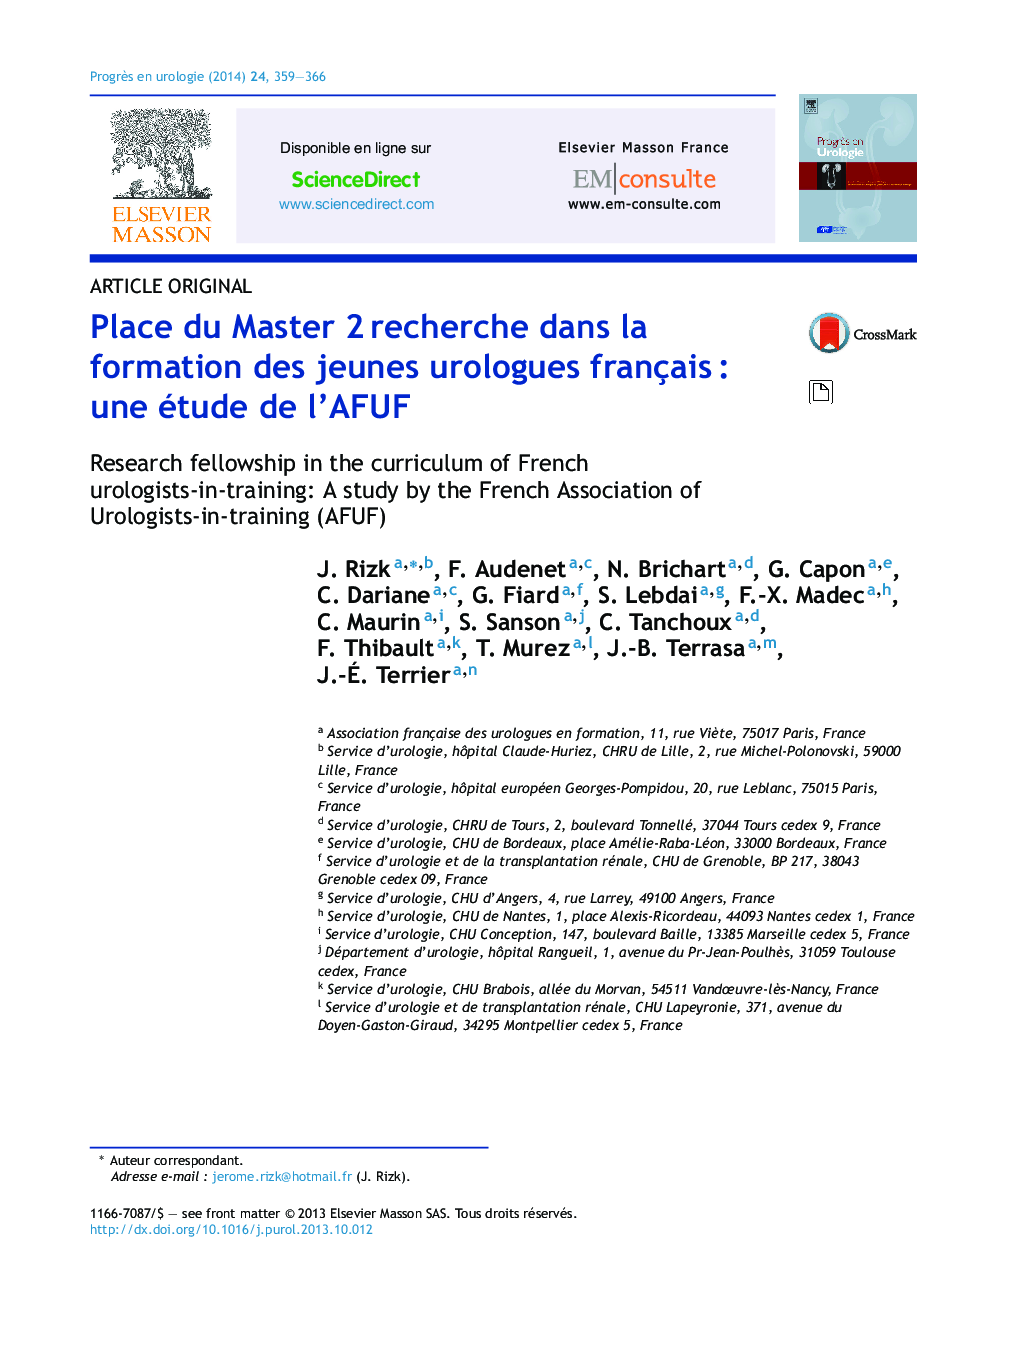 Place du Master 2Â recherche dans la formation des jeunes urologues françaisÂ : une étude de l'AFUF